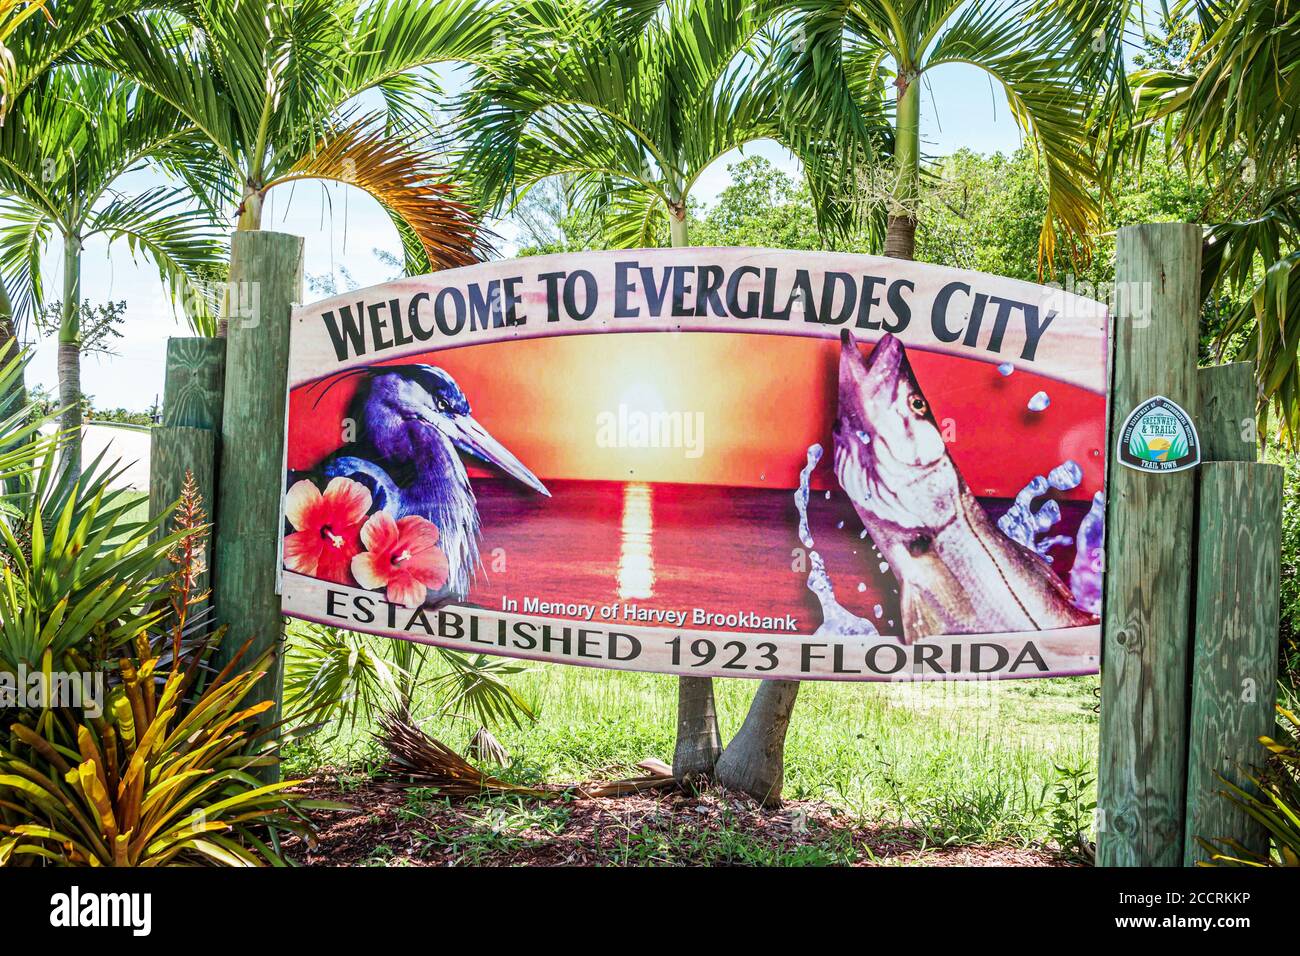 Everglades City Florida, Stadteingang Begrüßungsschild, Collier Avenue, Besucher reisen Reise Tour touristischer Tourismus Wahrzeichen, Kultur kulturell V Stockfoto